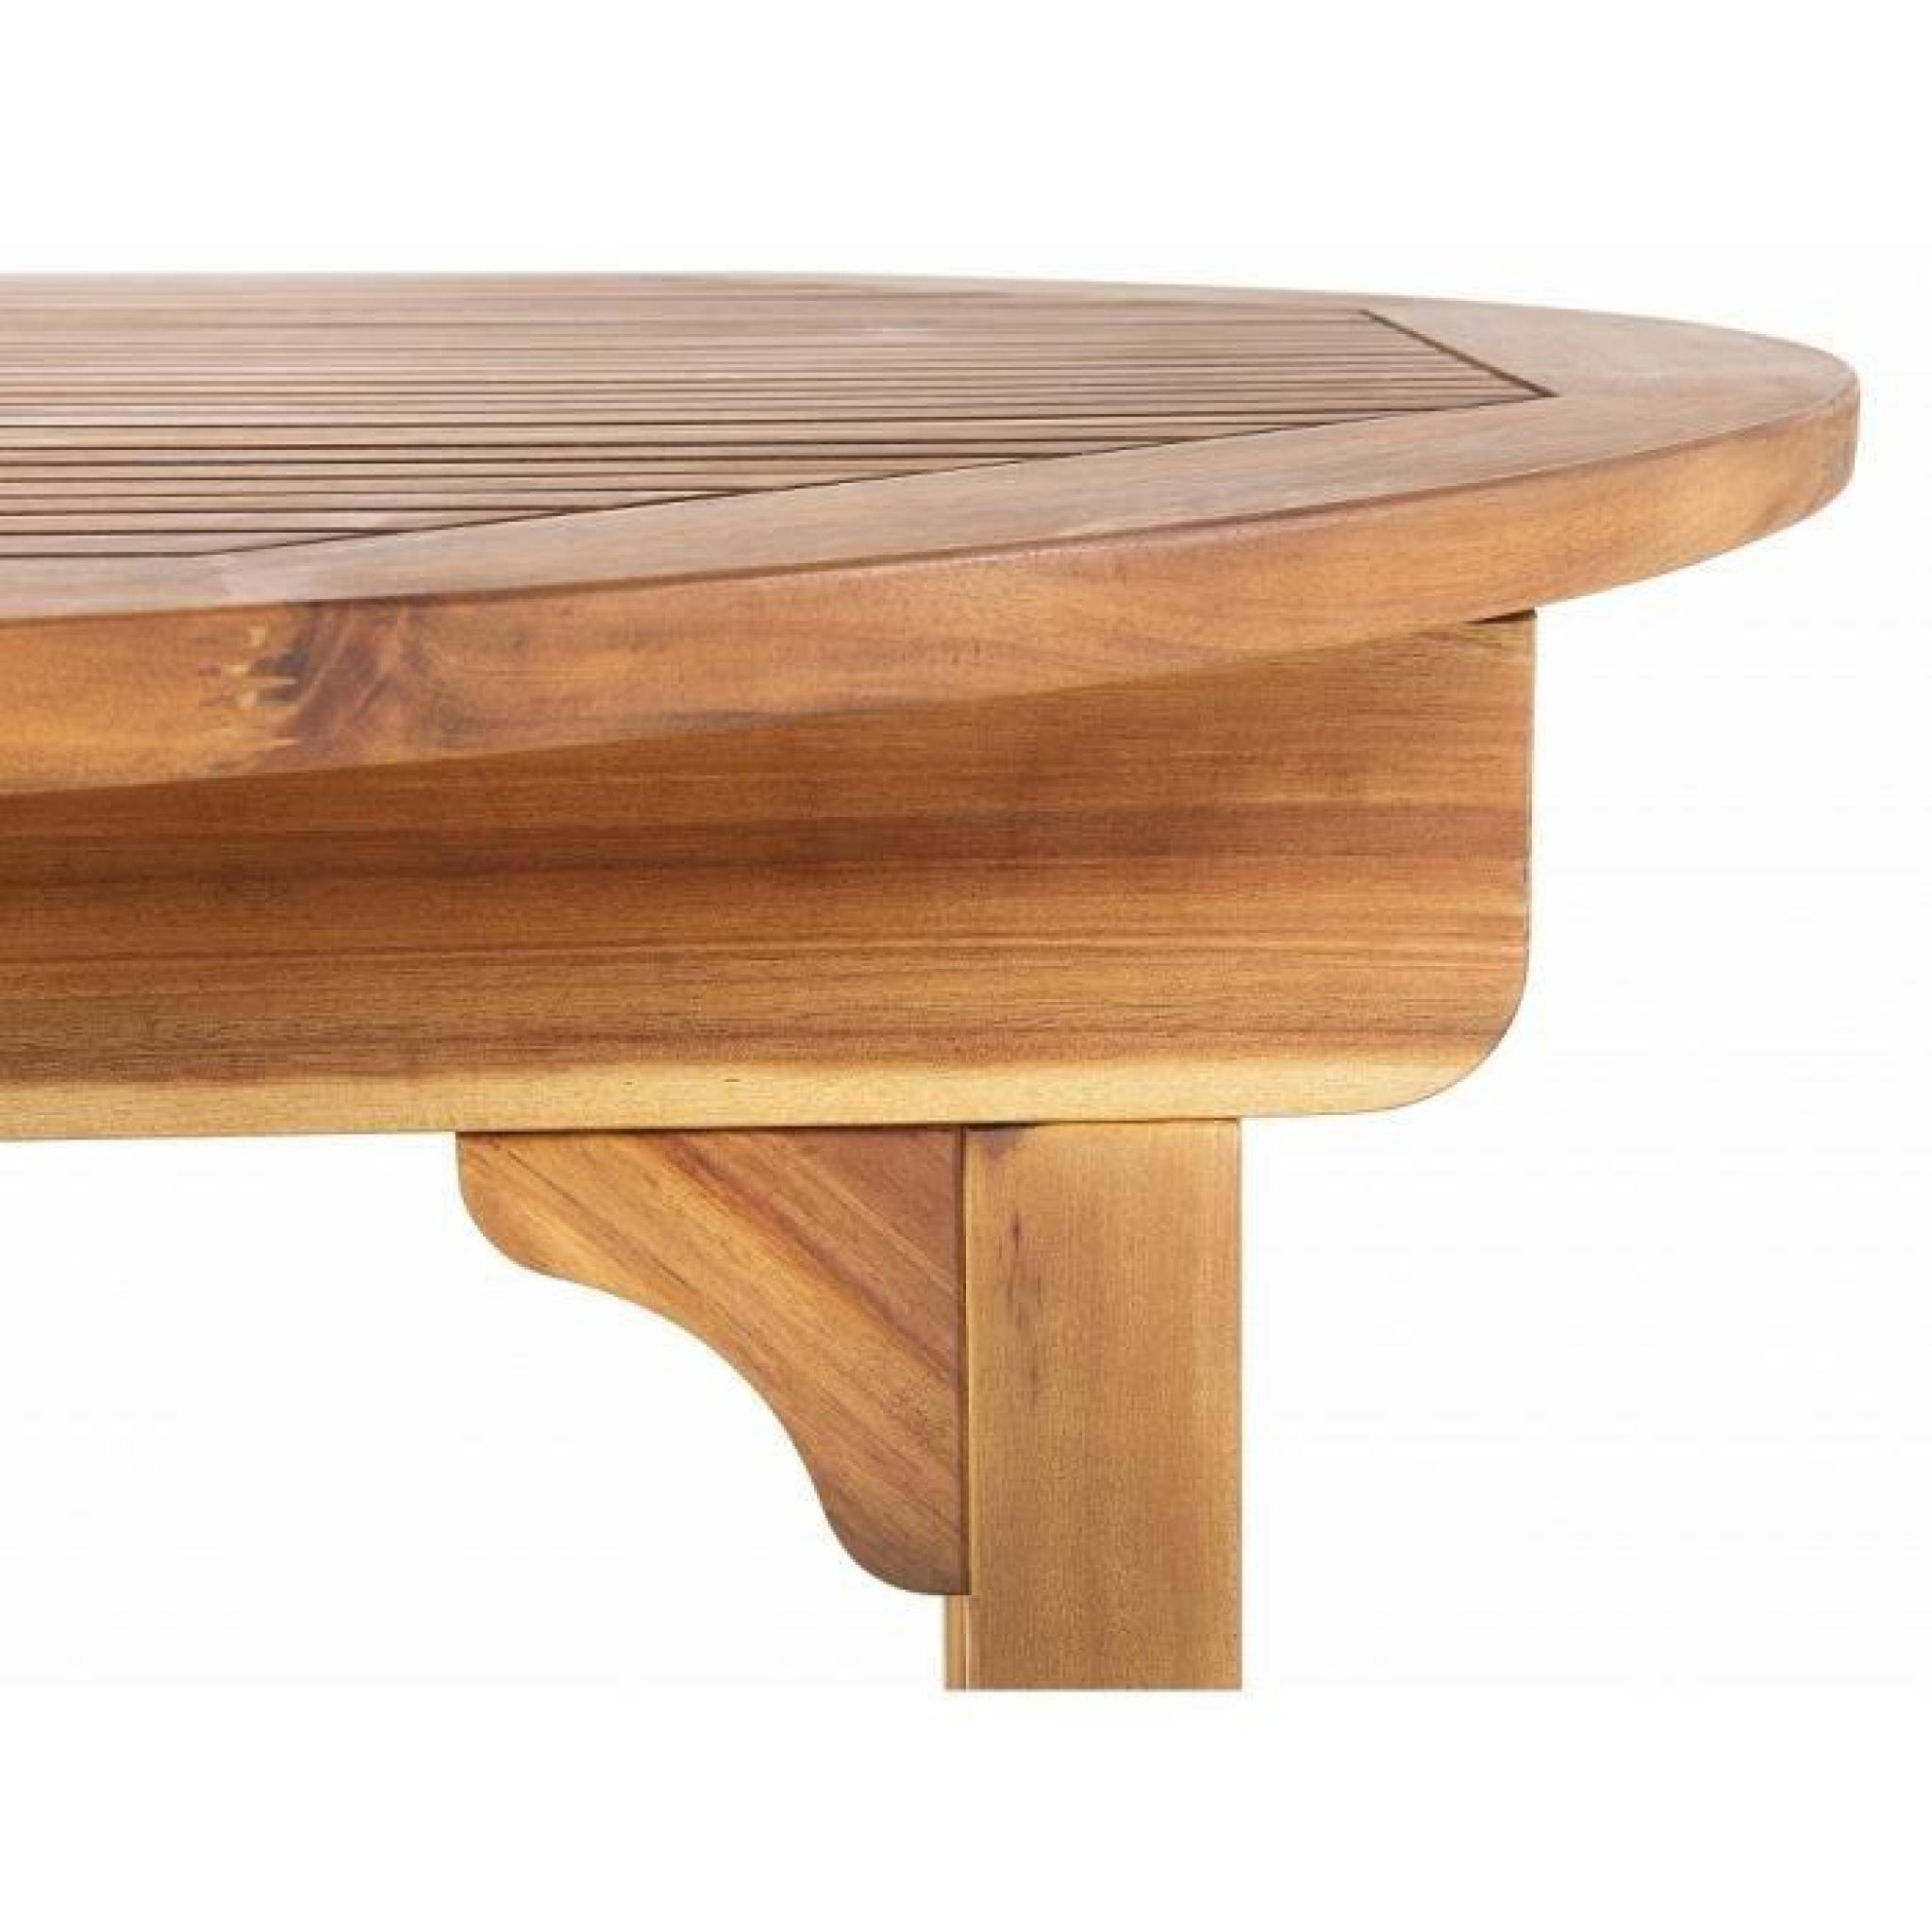 Table de jardin - table en bois ovale à rallonges - brun - Maui pas cher